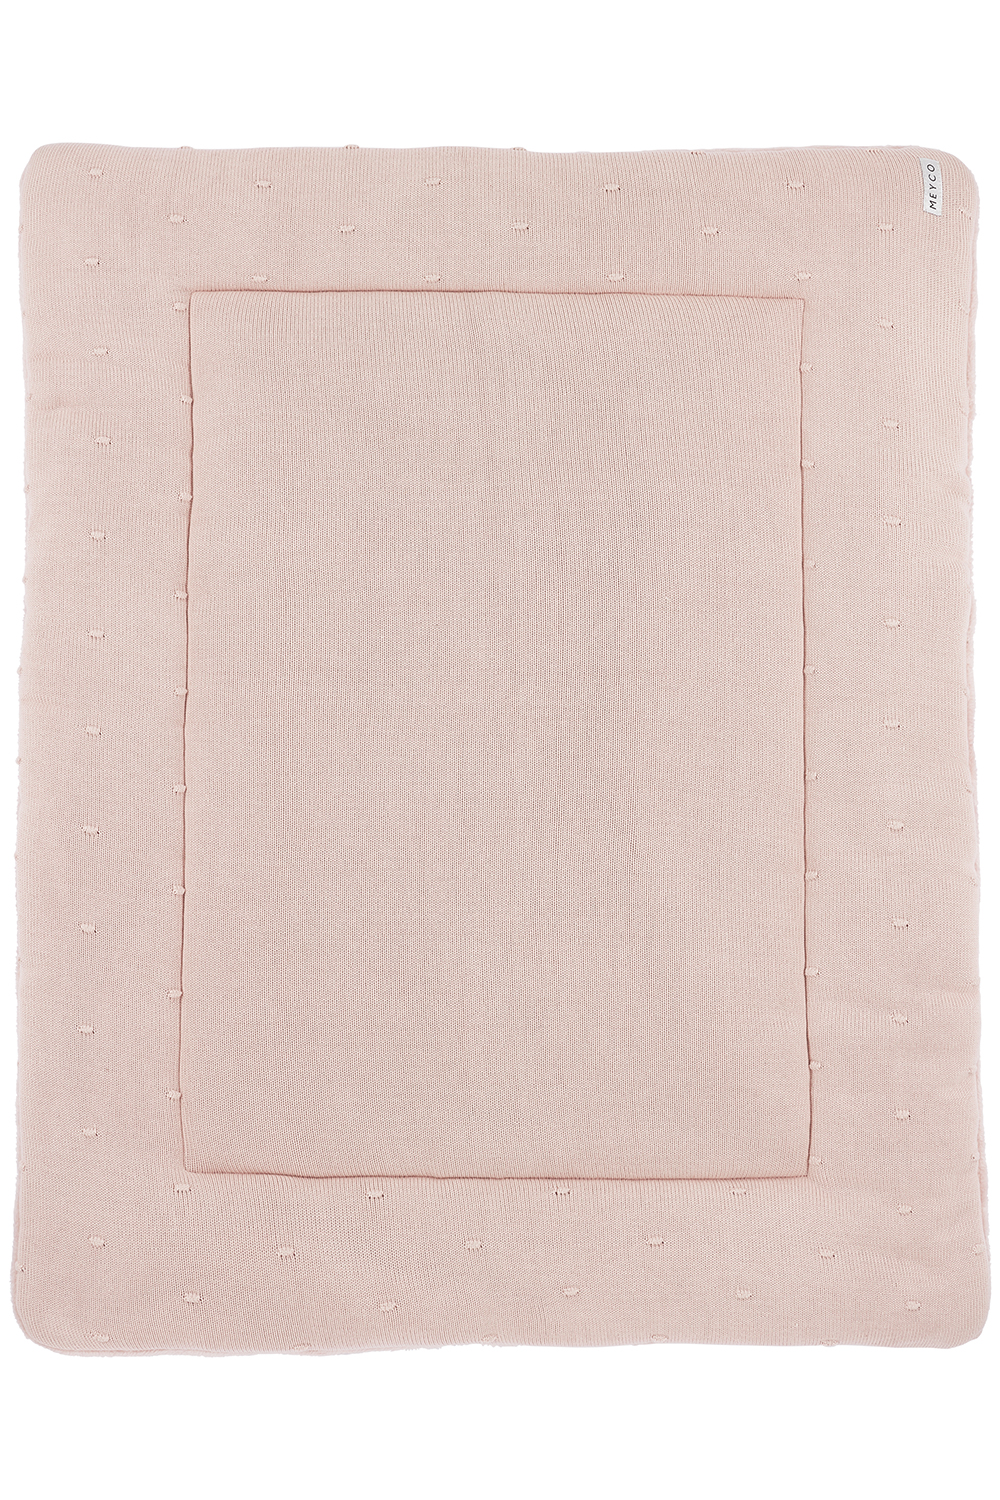 Playpen mattress - soft pink - 77x97cm